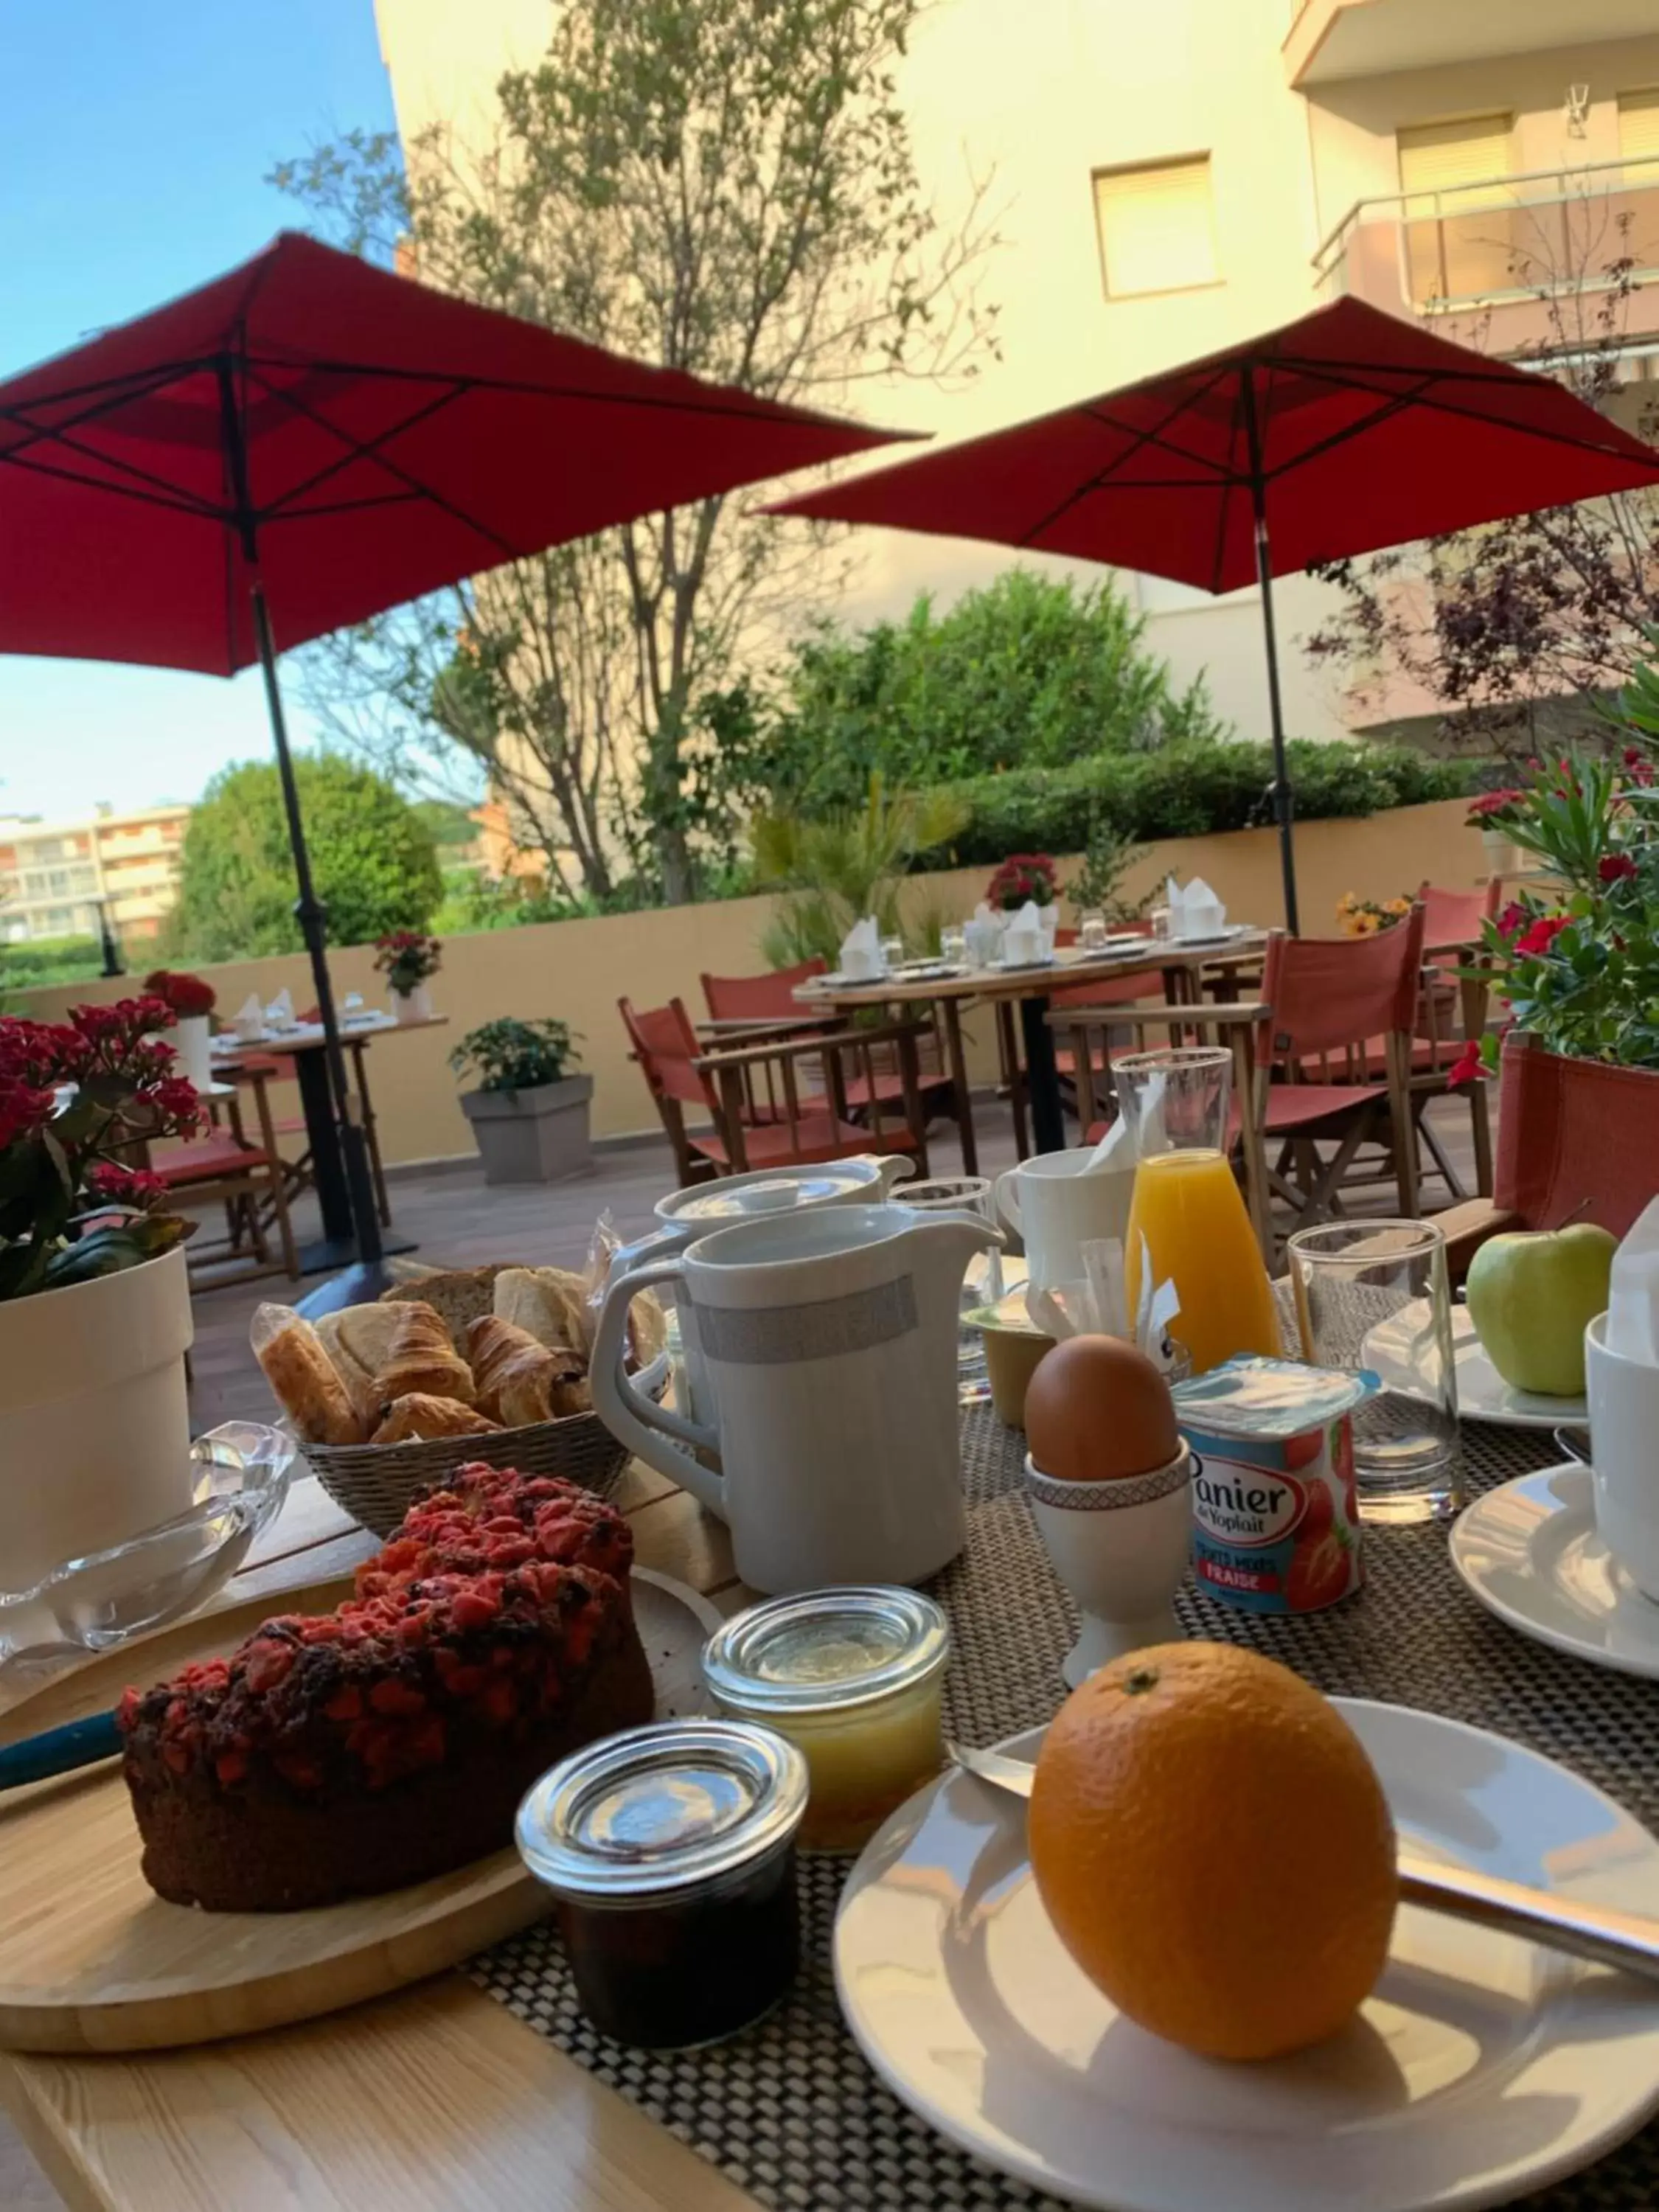 Breakfast in Le Petit Prince